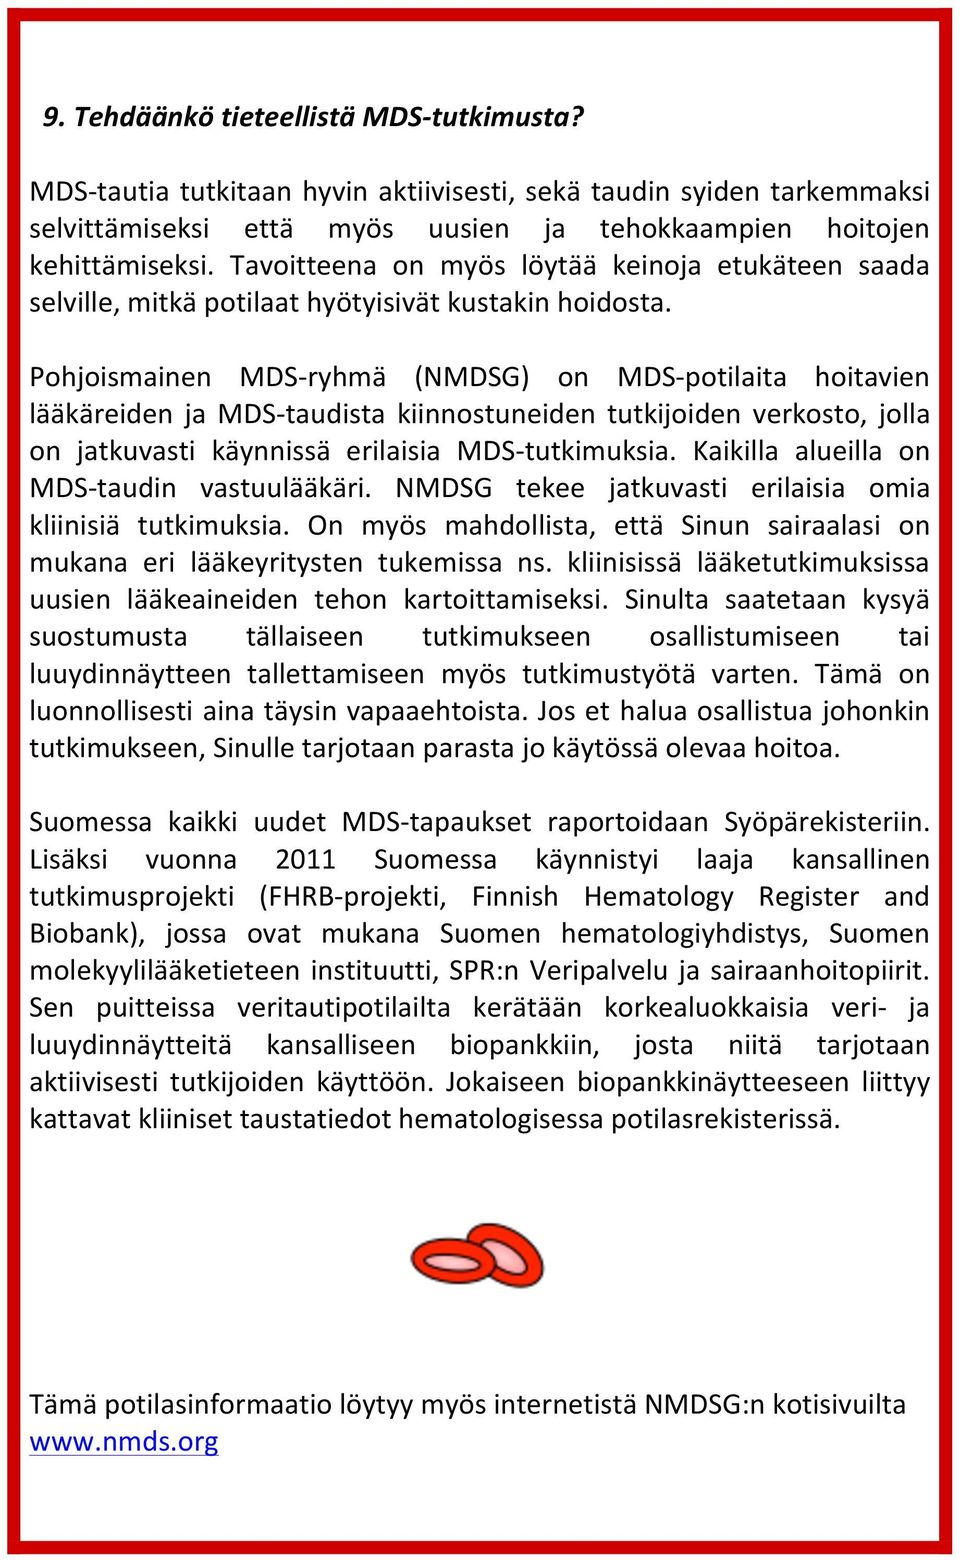 Pohjoismainen MDS- ryhmä (NMDSG) on MDS- potilaita hoitavien lääkäreiden ja MDS- taudista kiinnostuneiden tutkijoiden verkosto, jolla on jatkuvasti käynnissä erilaisia MDS- tutkimuksia.